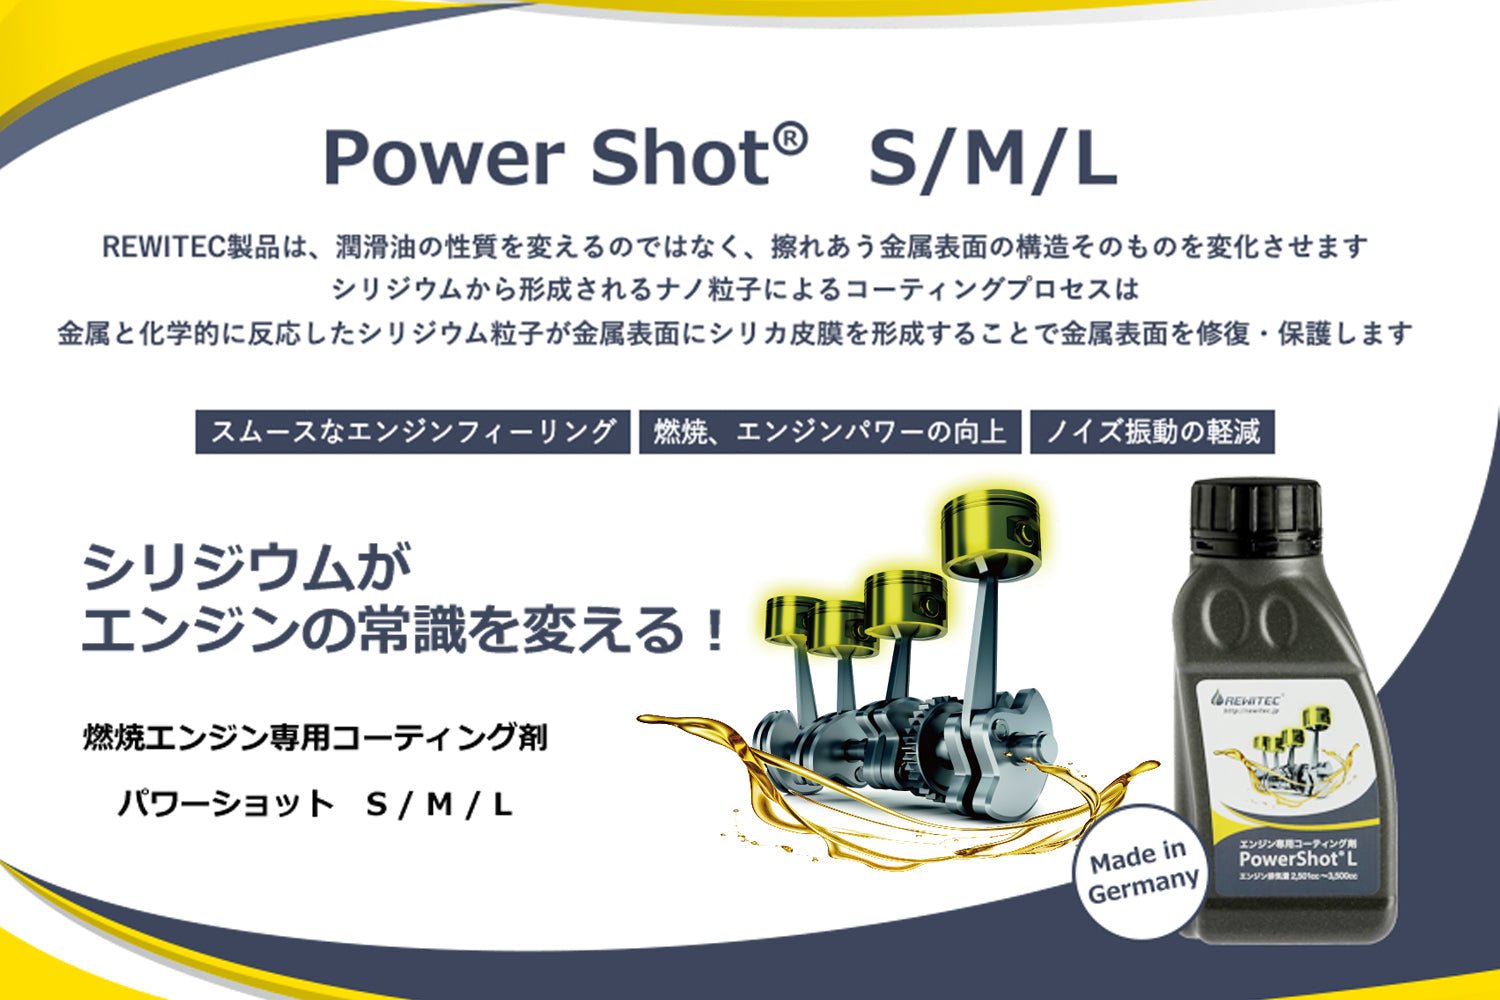 REWITEC(レヴィテック) 燃焼エンジン用コーティング剤 PowerShot(パワーショット) L Sサイズセット 04-1229 04